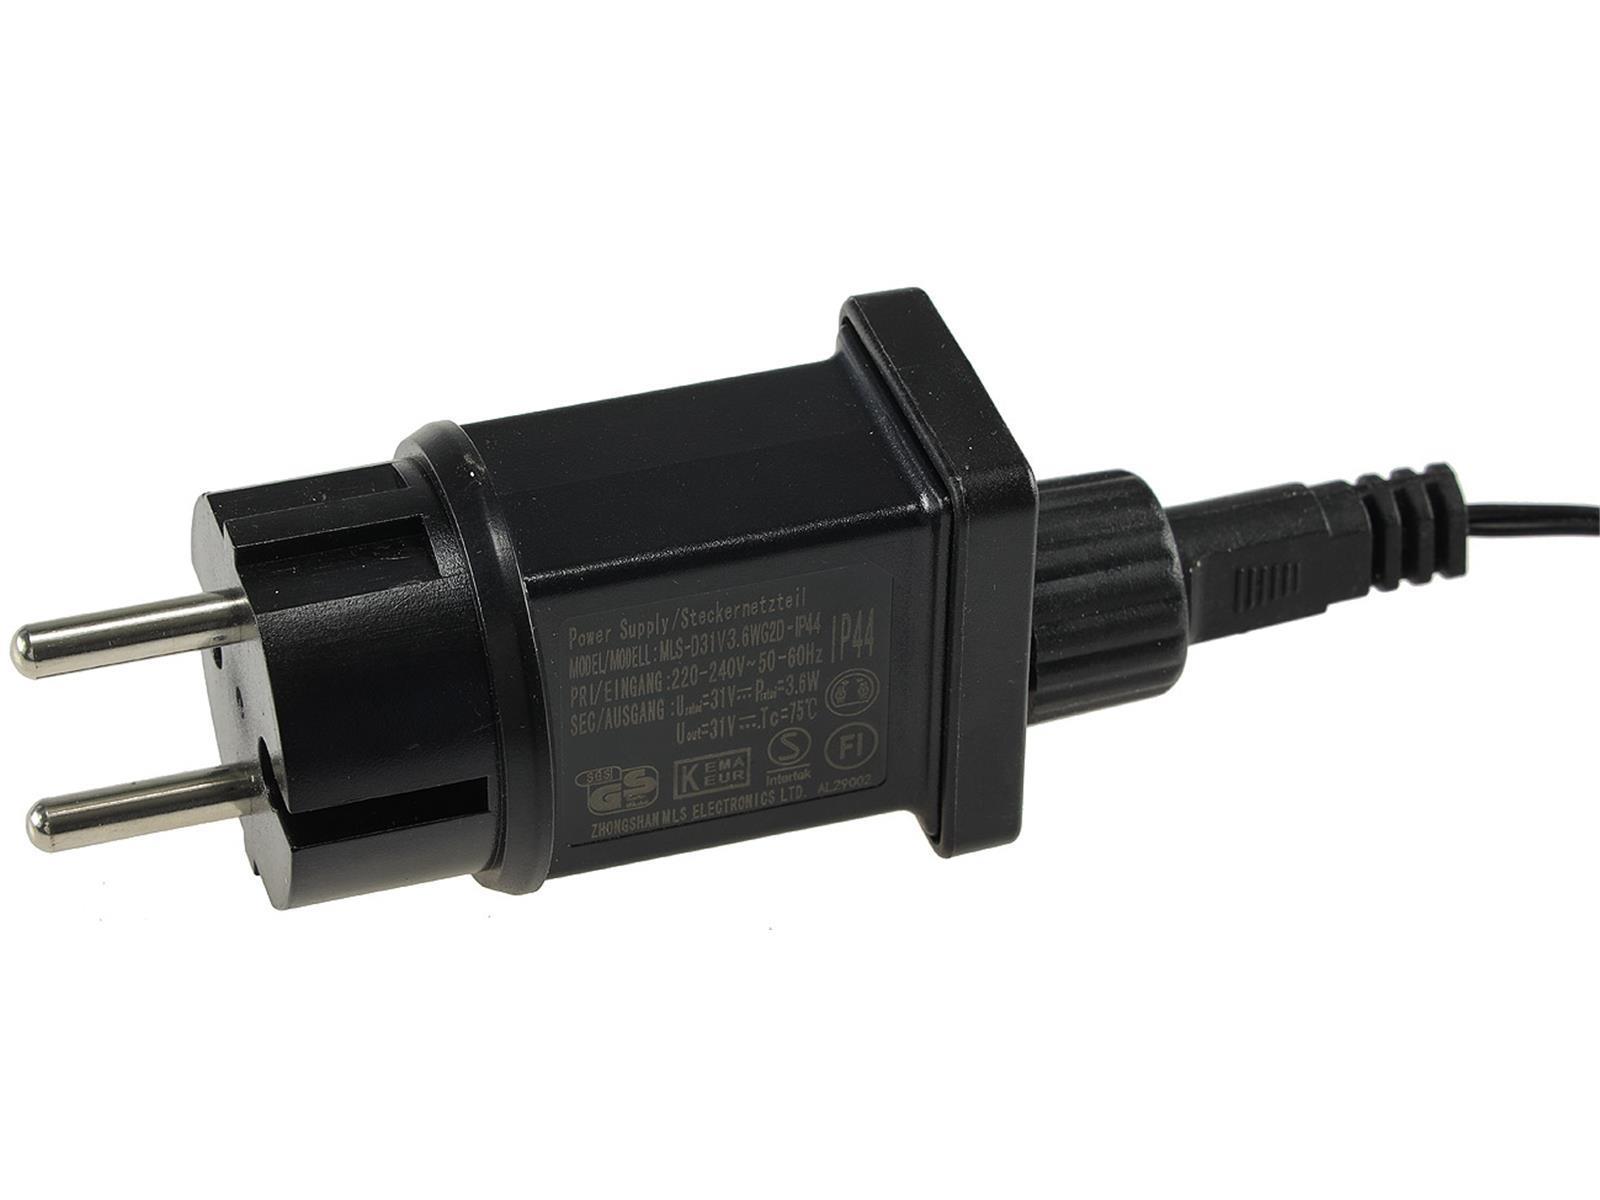 LED Aussen-Lichterkette "CT-ALK200" 20mwarmweiß, Kabel schwarz, IP44, 200 LEDs